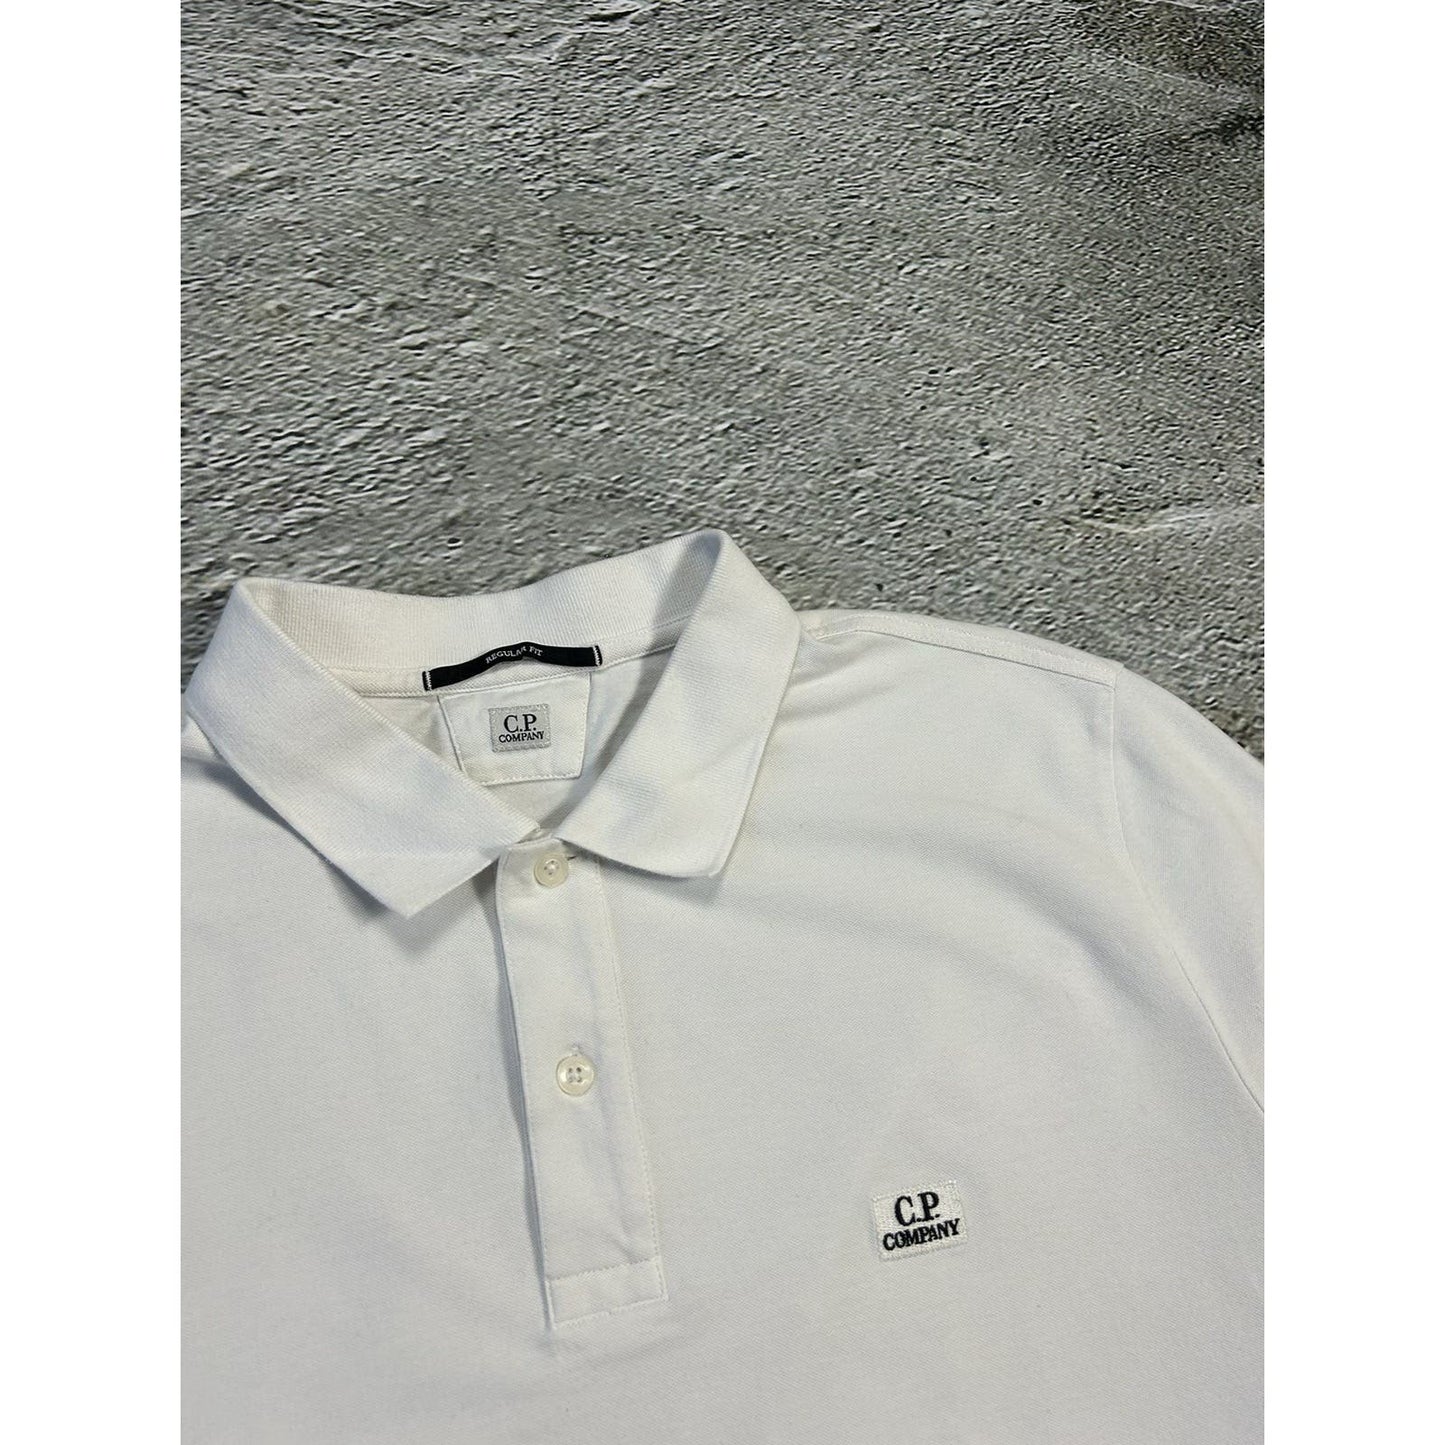 C.P Company polo T-shirt white small logo